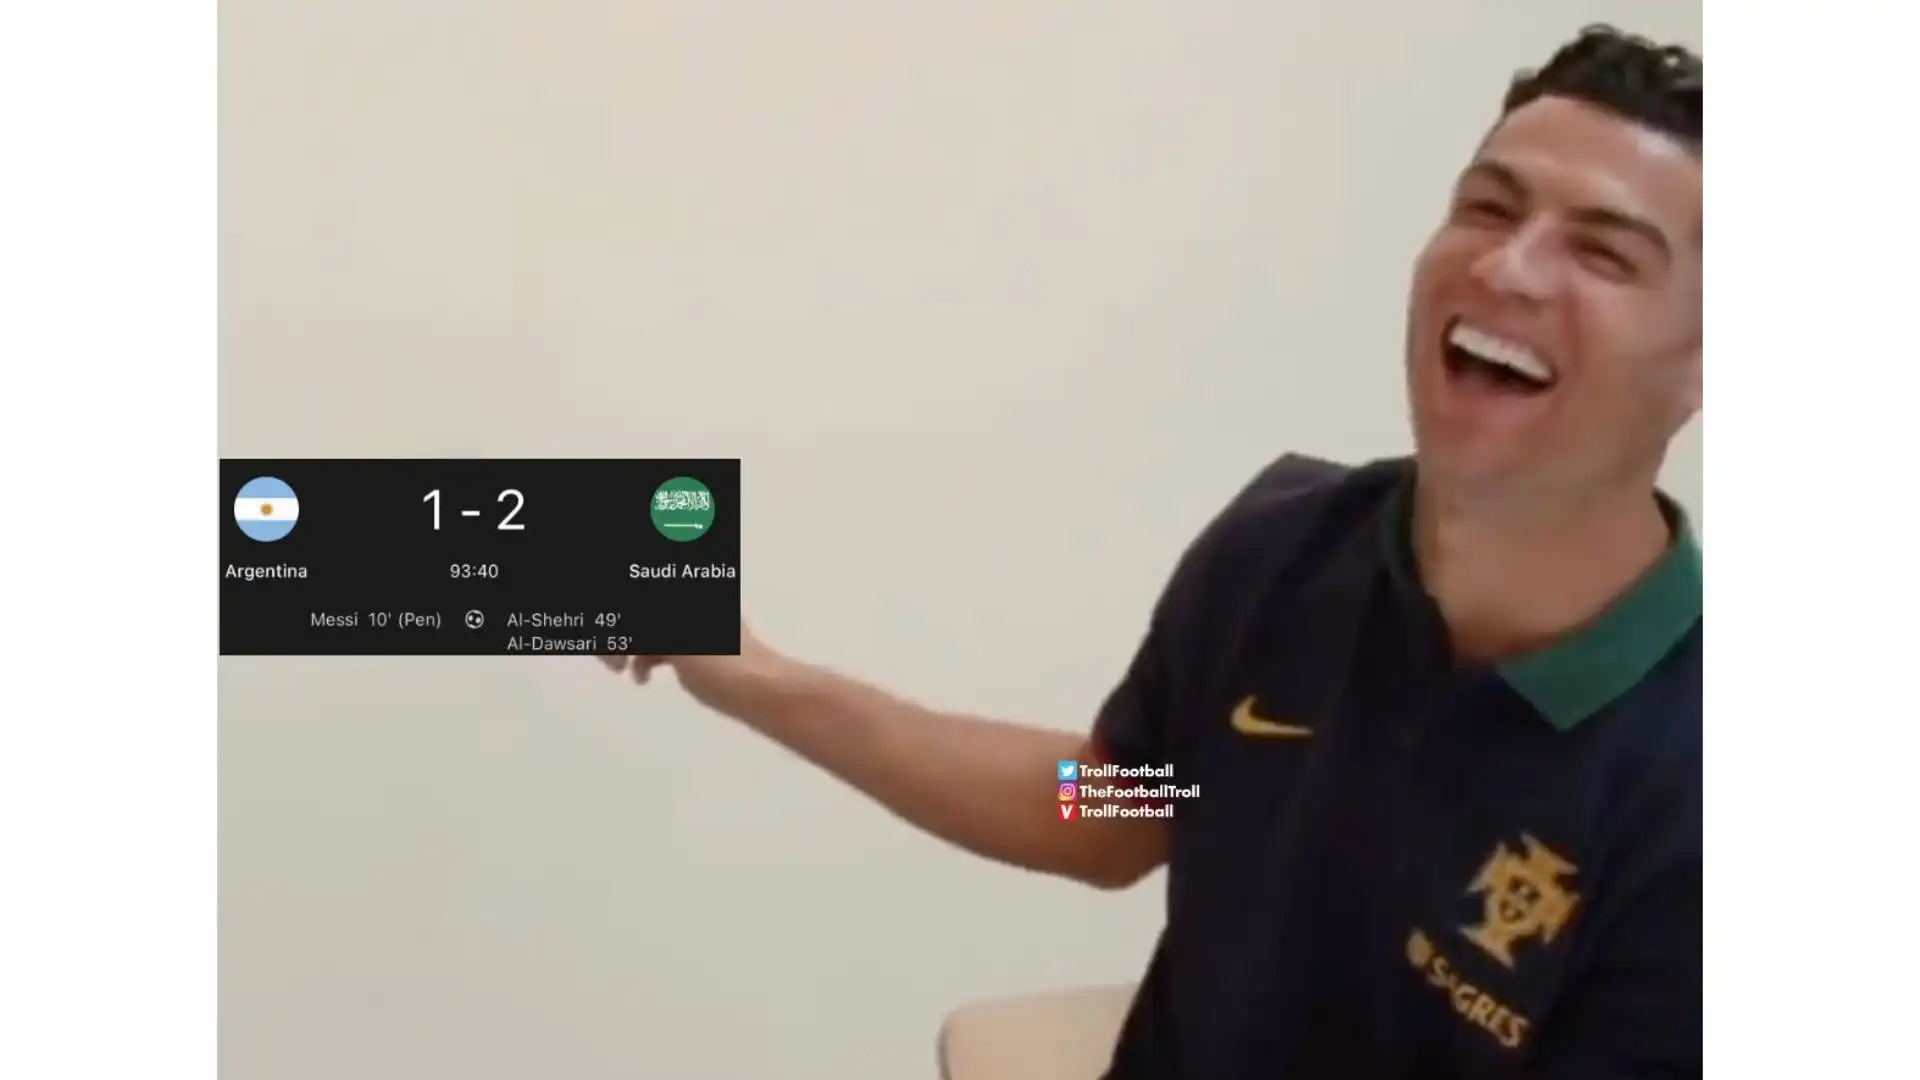 Chissà se se la starà ridendo anche Cristiano Ronaldo, come in questa immagine